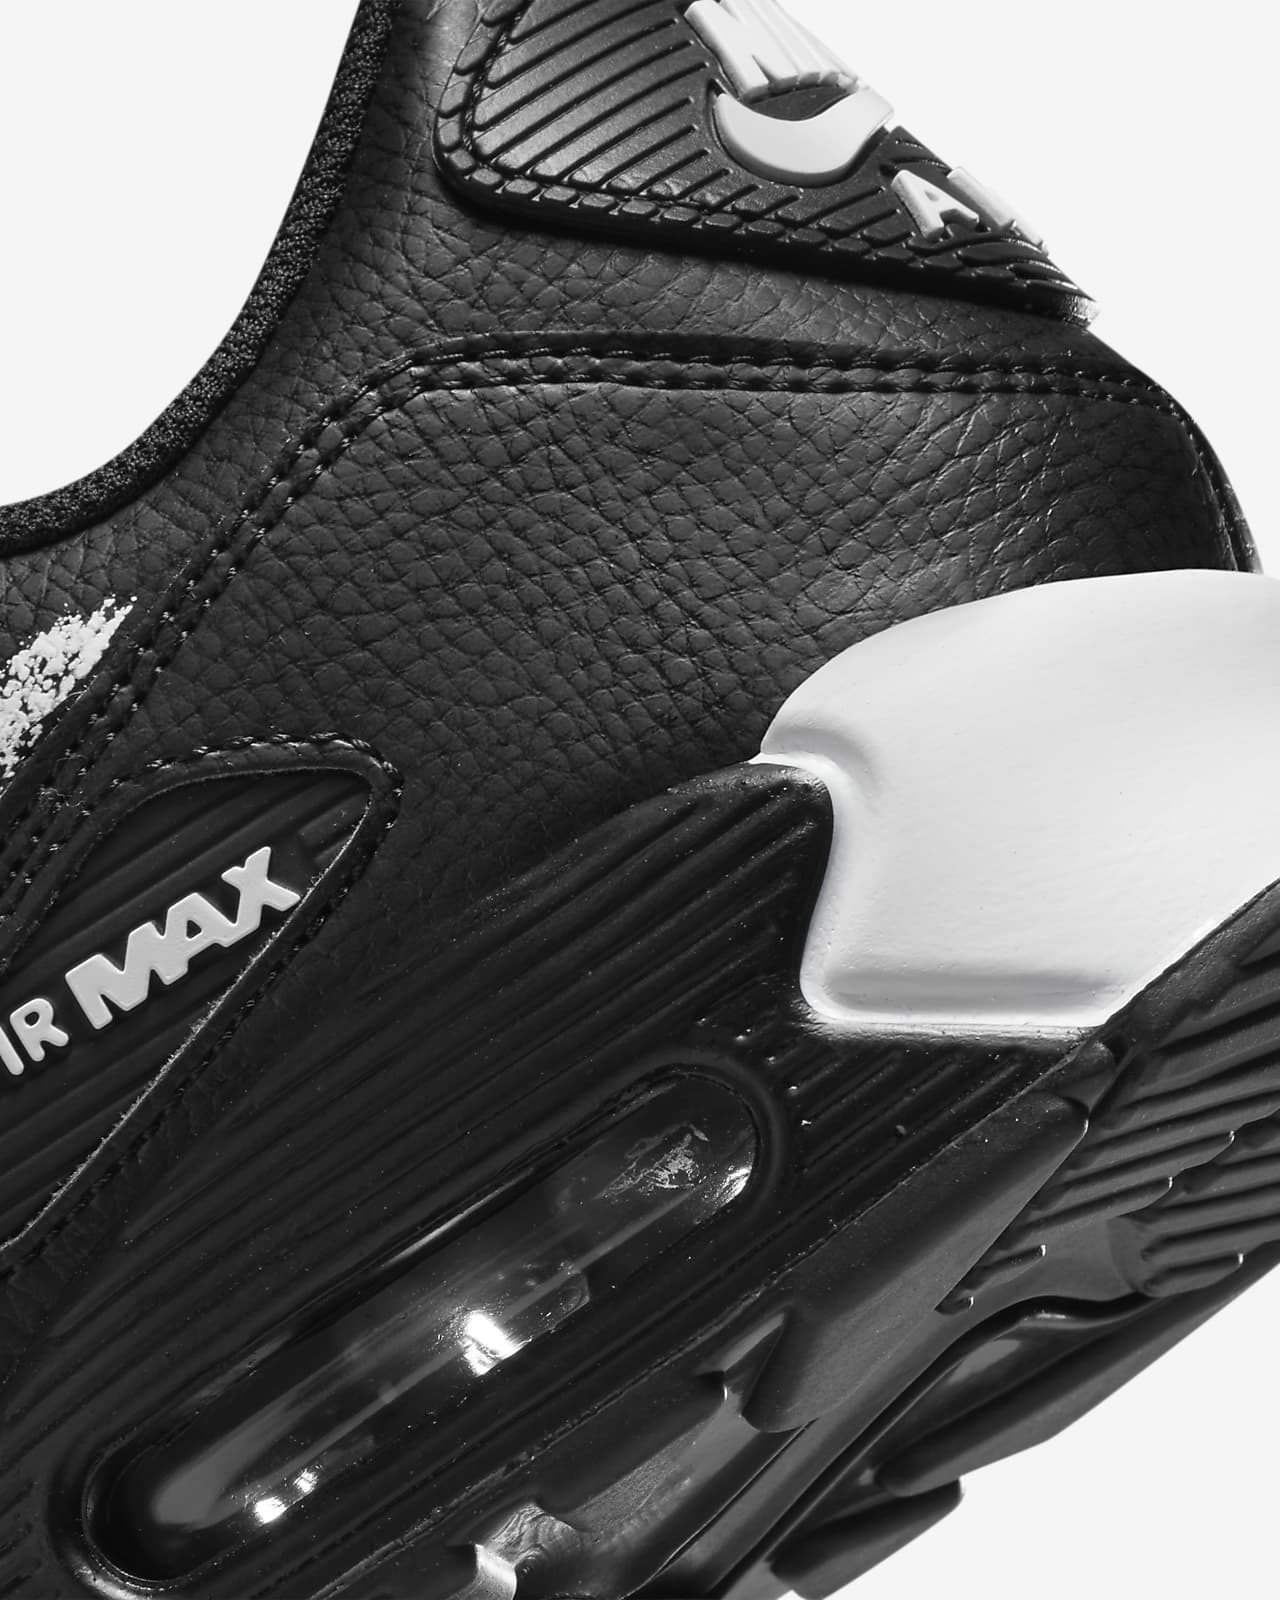 Mars Aanbeveling Leed Nike Air Max 90 Herenschoenen. Nike NL